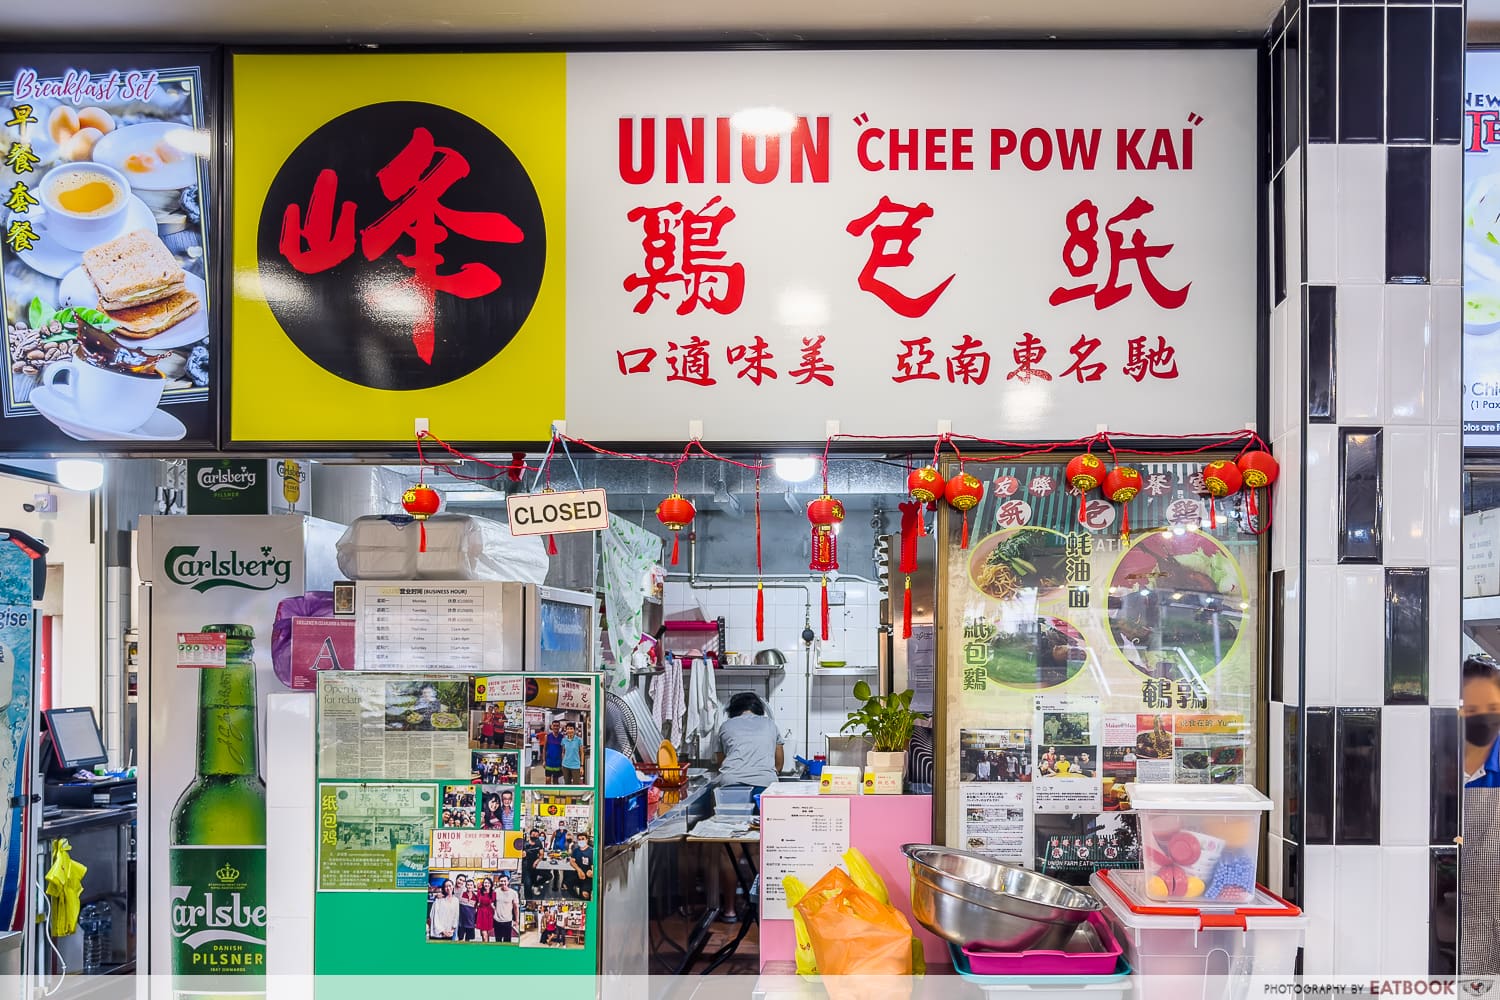 union farm chee pow kai - storefront